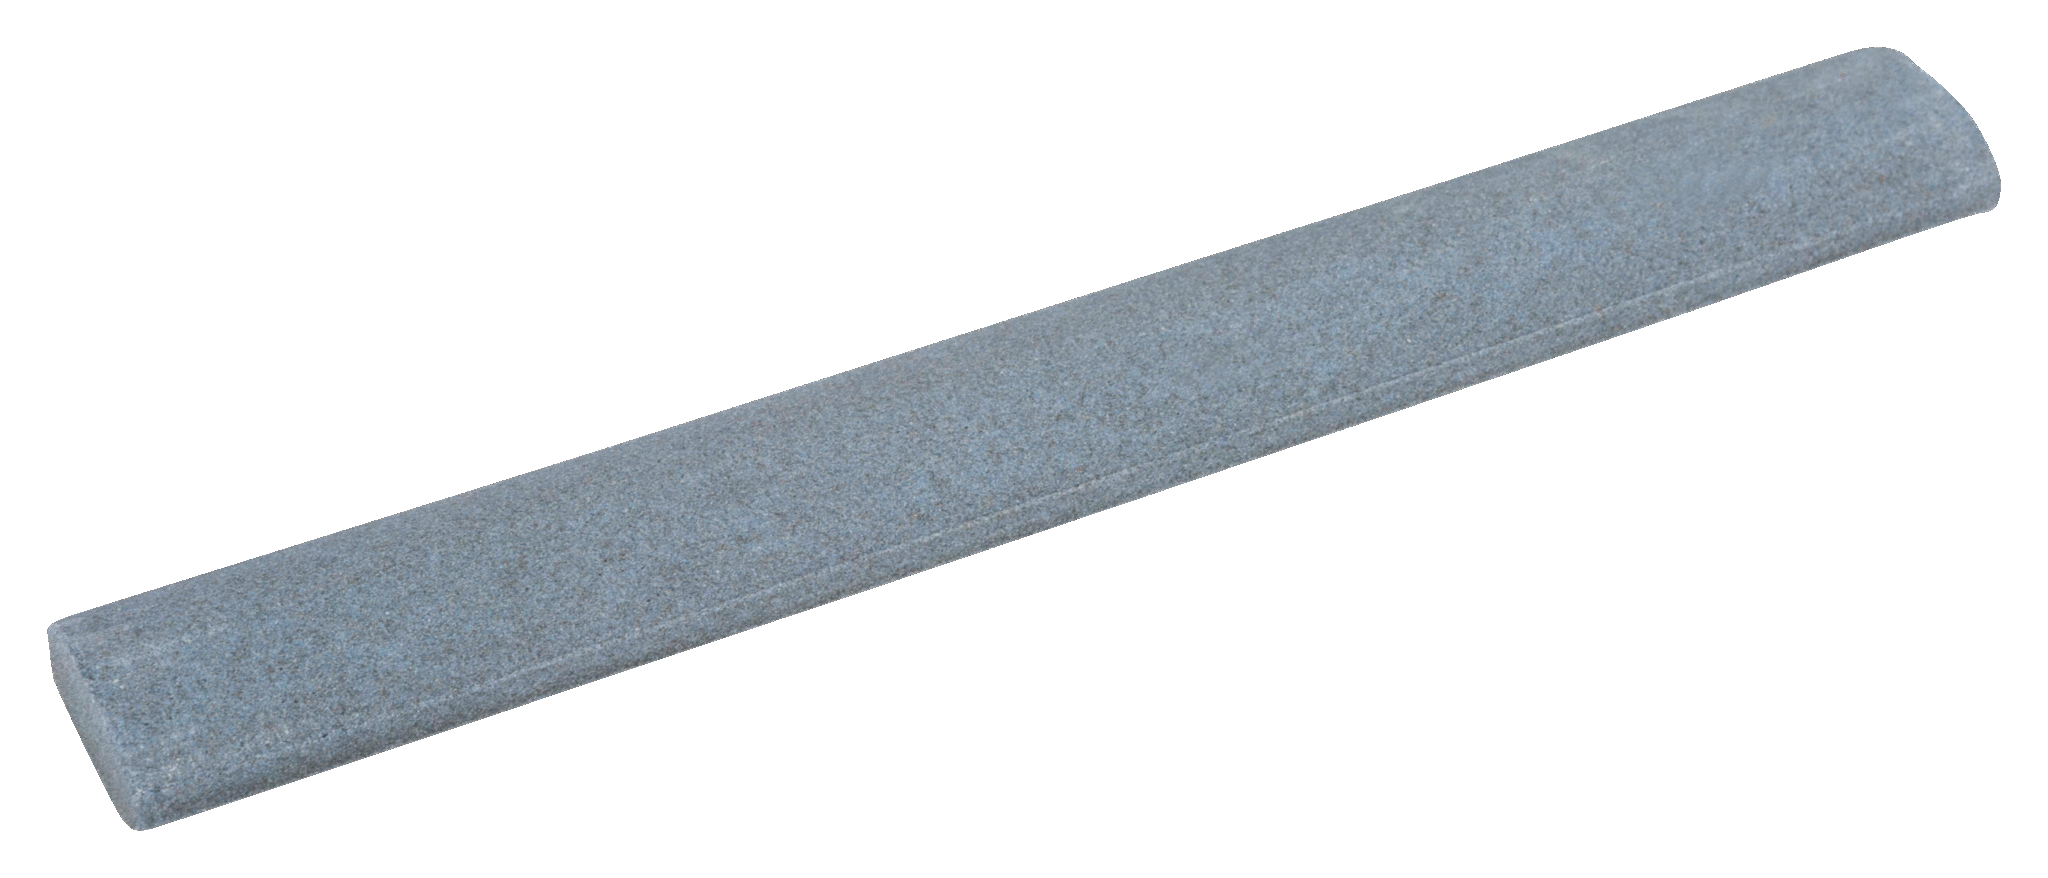 Kamień do ostrzenia syntetyczny, 180 ziaren/cm2, 9 in, 210 g BAHCO